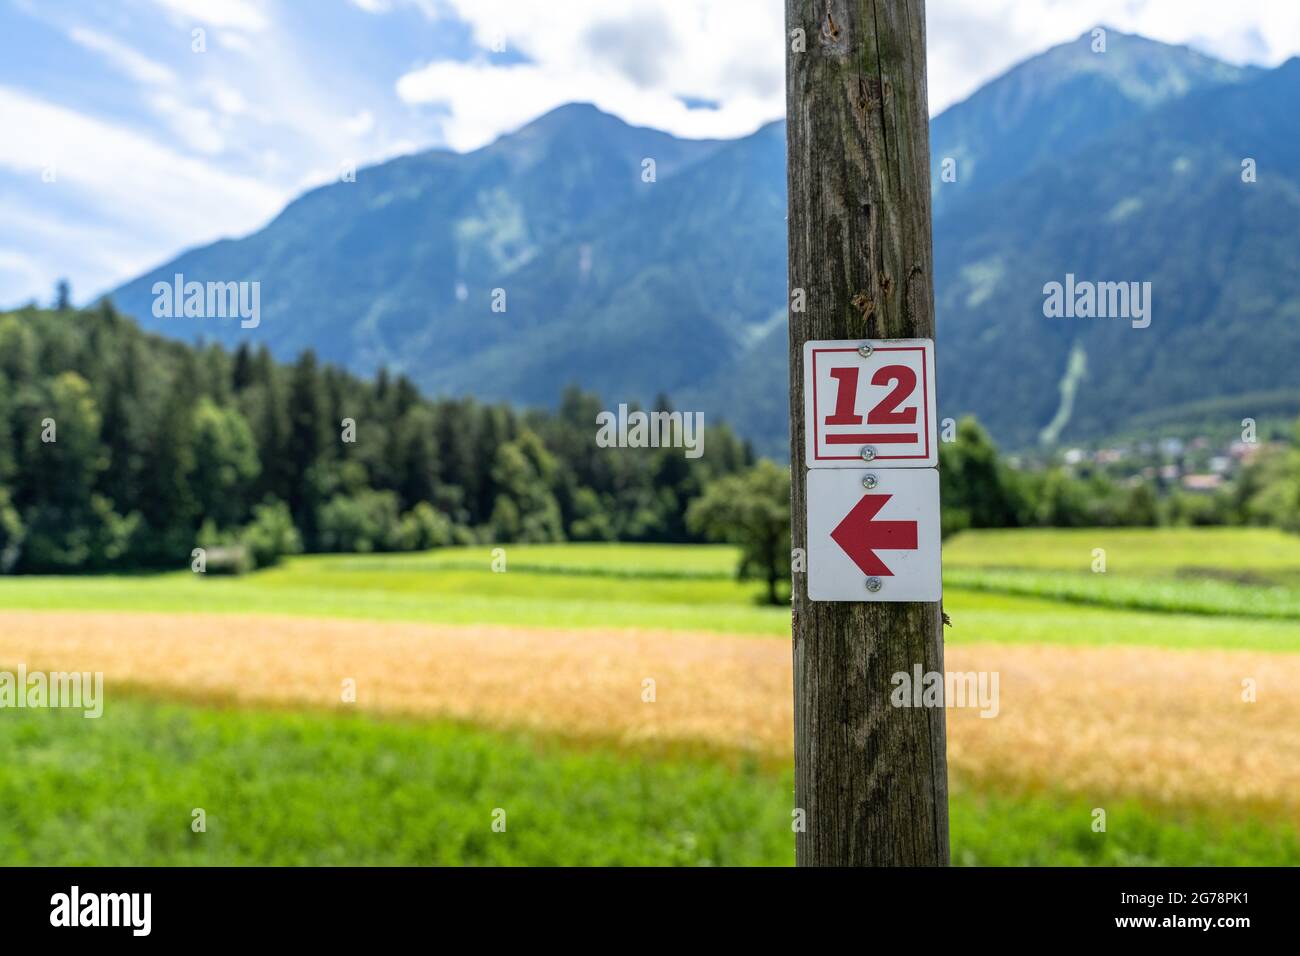 Europa, Österreich, Tirol, Ötztal Alpen, Ötztal, Ambach, Wegweiser des Ötztaler Urweg auf einem Holzpfahl vor einem Feld Stockfoto